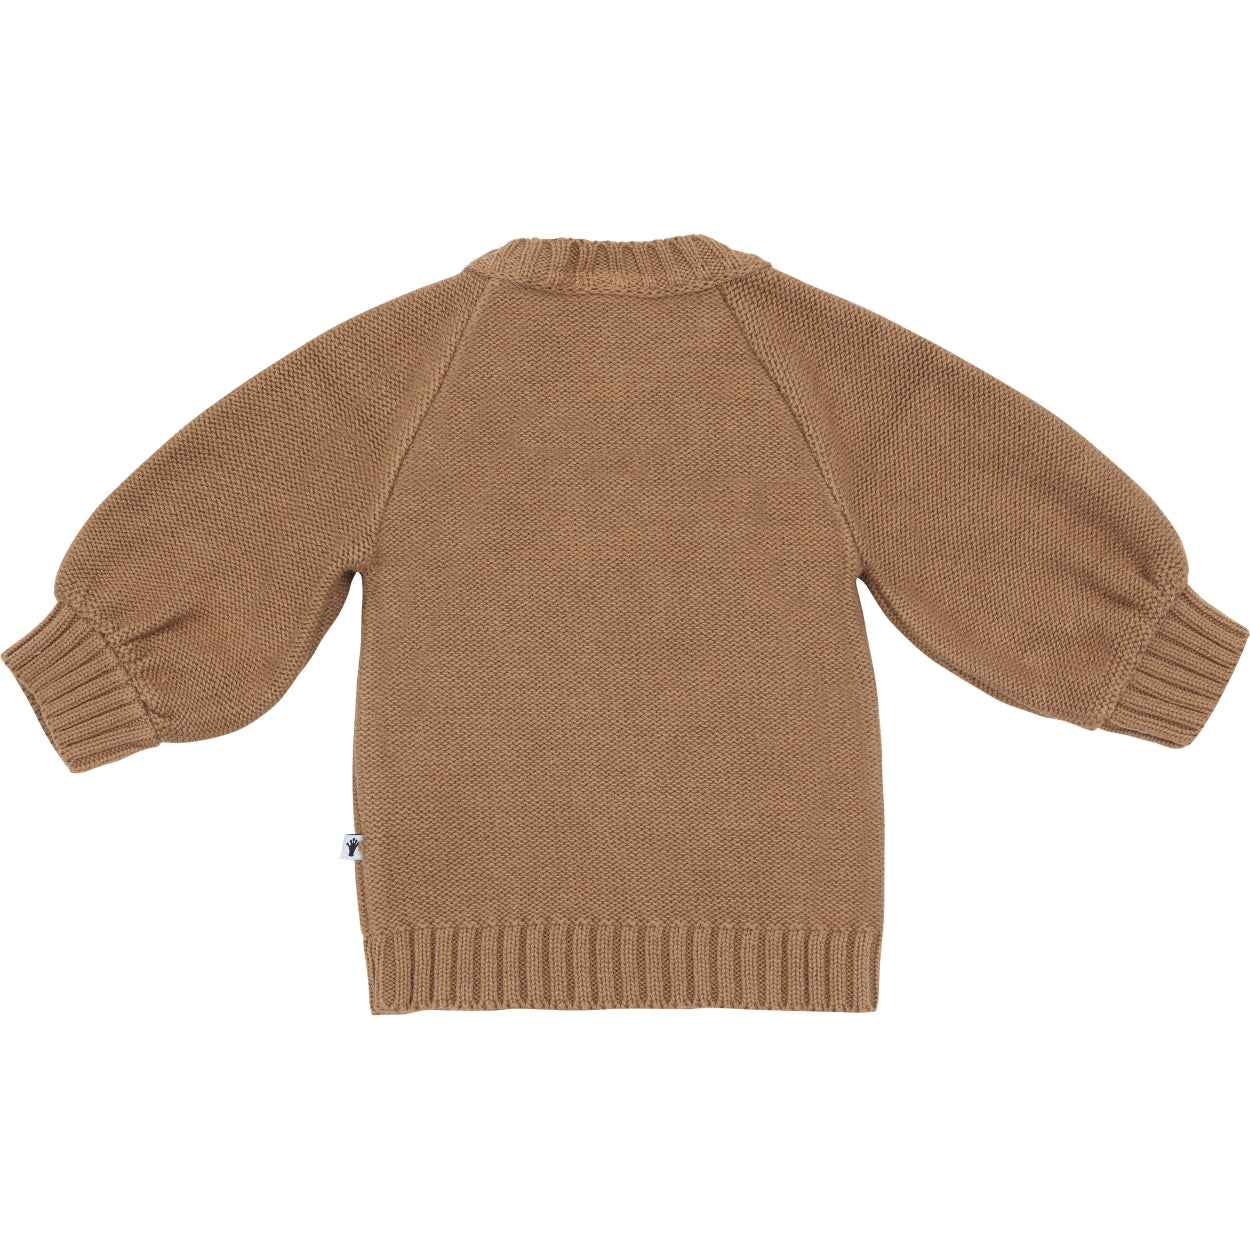 Meisjes Sweater Dot van Klein Baby in de kleur Burro in maat 74.